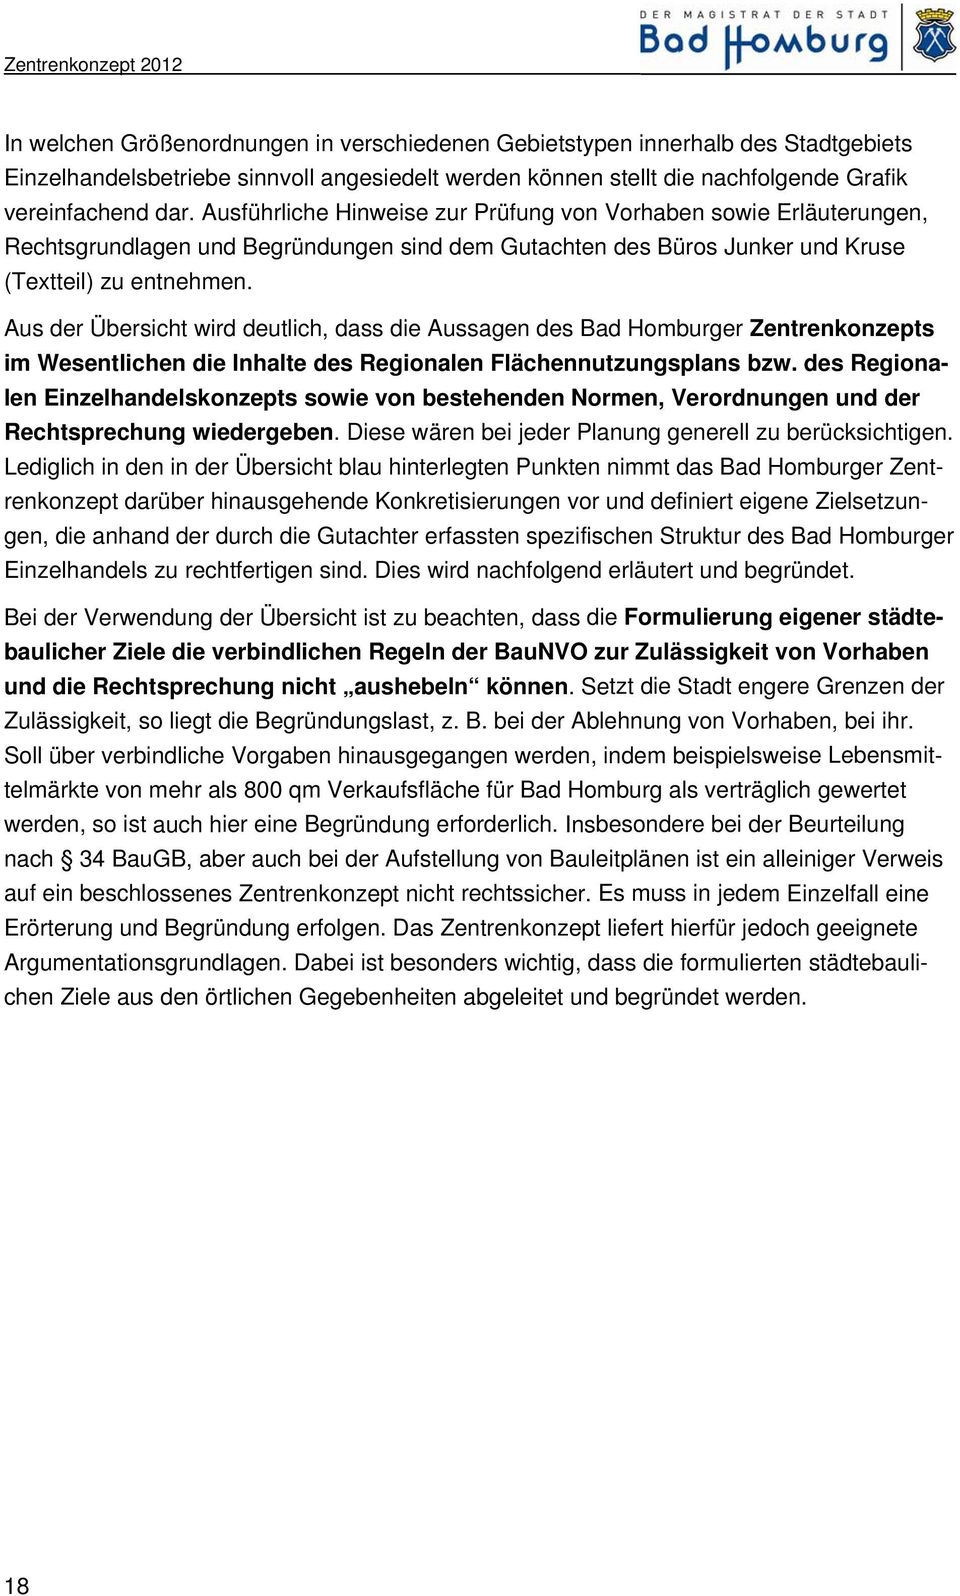 Aus der Übersicht wird deutlich, dass die Aussagen des Bad Homburger Zentrenkonzepts im Wesentlichen die Inhalte des Regionalen Flächennutzungsplans bzw.